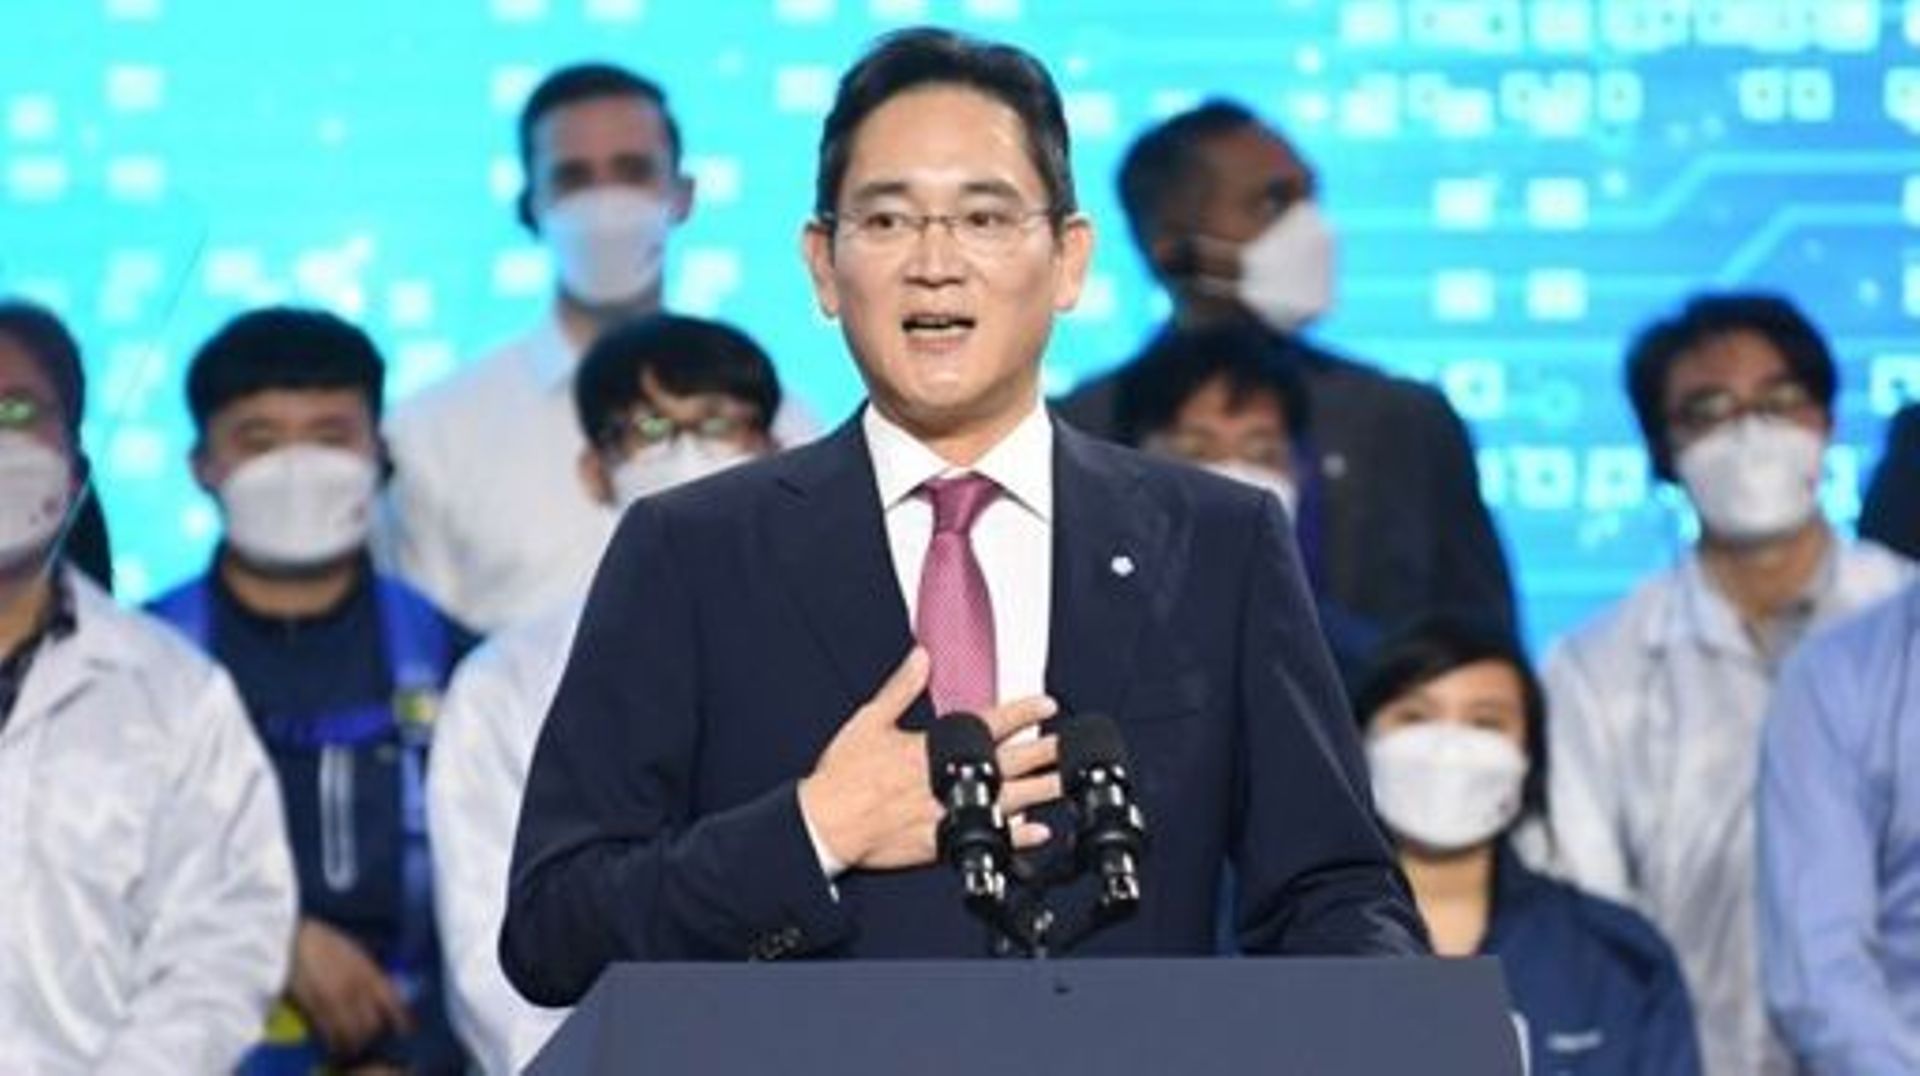 Corée du Sud: le patron de Samsung obtient une grâce présidentielle